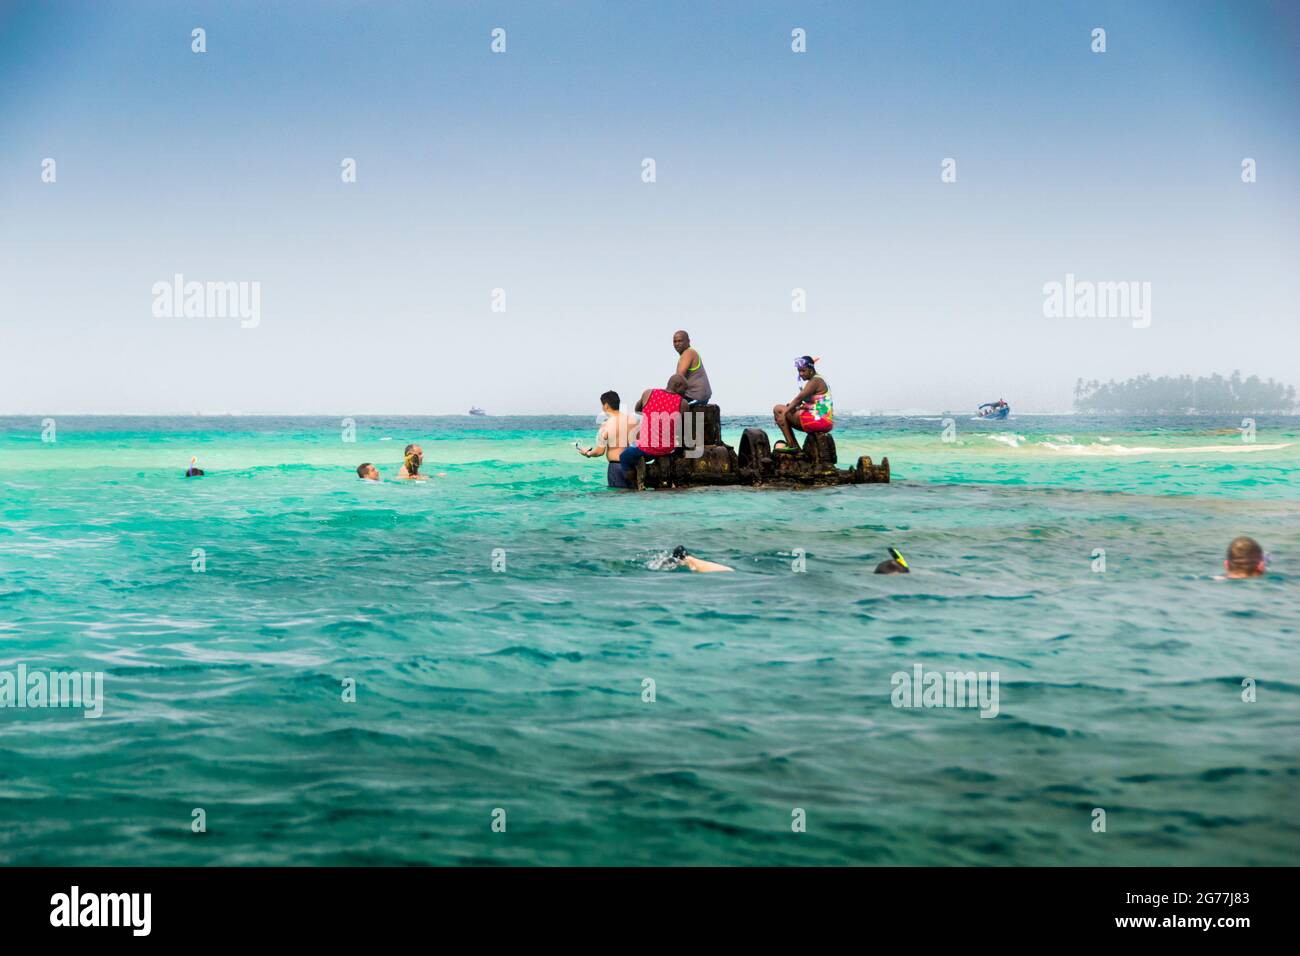 Les gens qui profitent de la plongée en apnée dans un bateau submergé dans une île des Caraïbes près de la côte du Panama. Eau claire et plongée libre. Banque D'Images